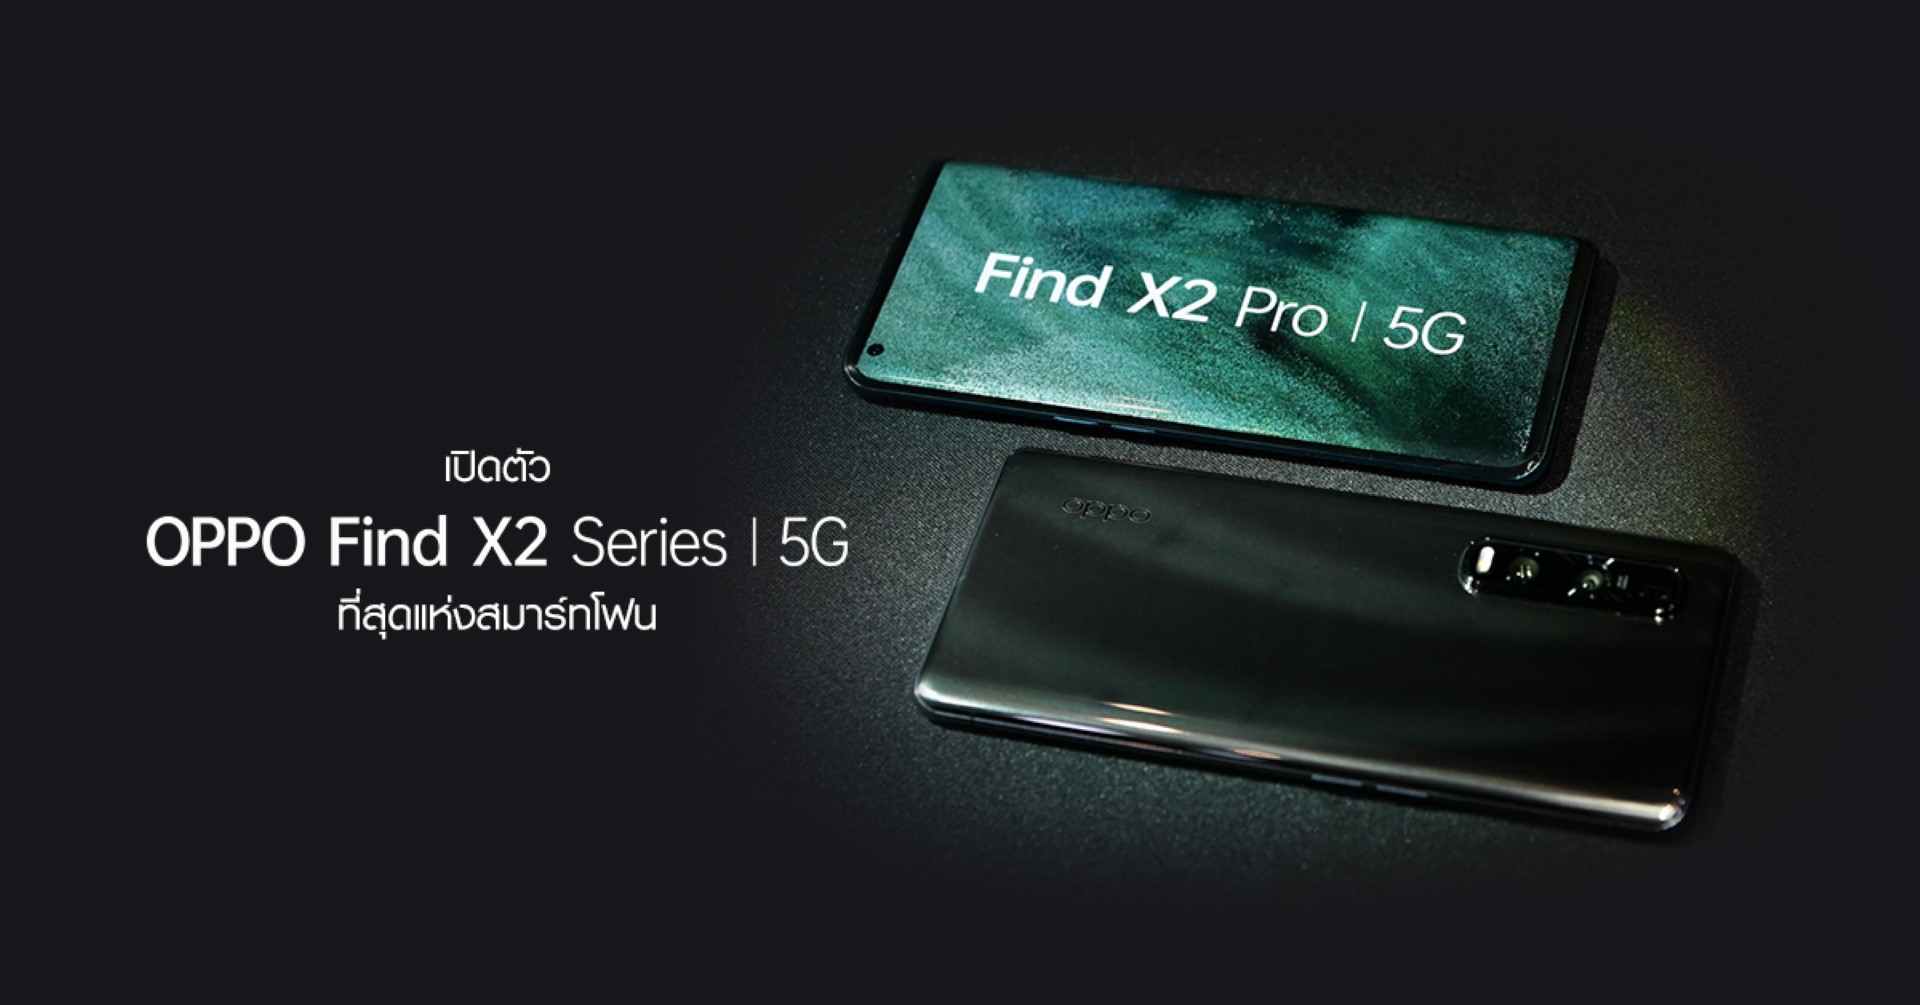 เปิดตัว OPPO Find X2 Series 5G ที่สุดแห่งสมาร์ทโฟน พร้อมเชื่อมต่อสัญญาณ 5G ได้อย่างเต็มรูปแบบ